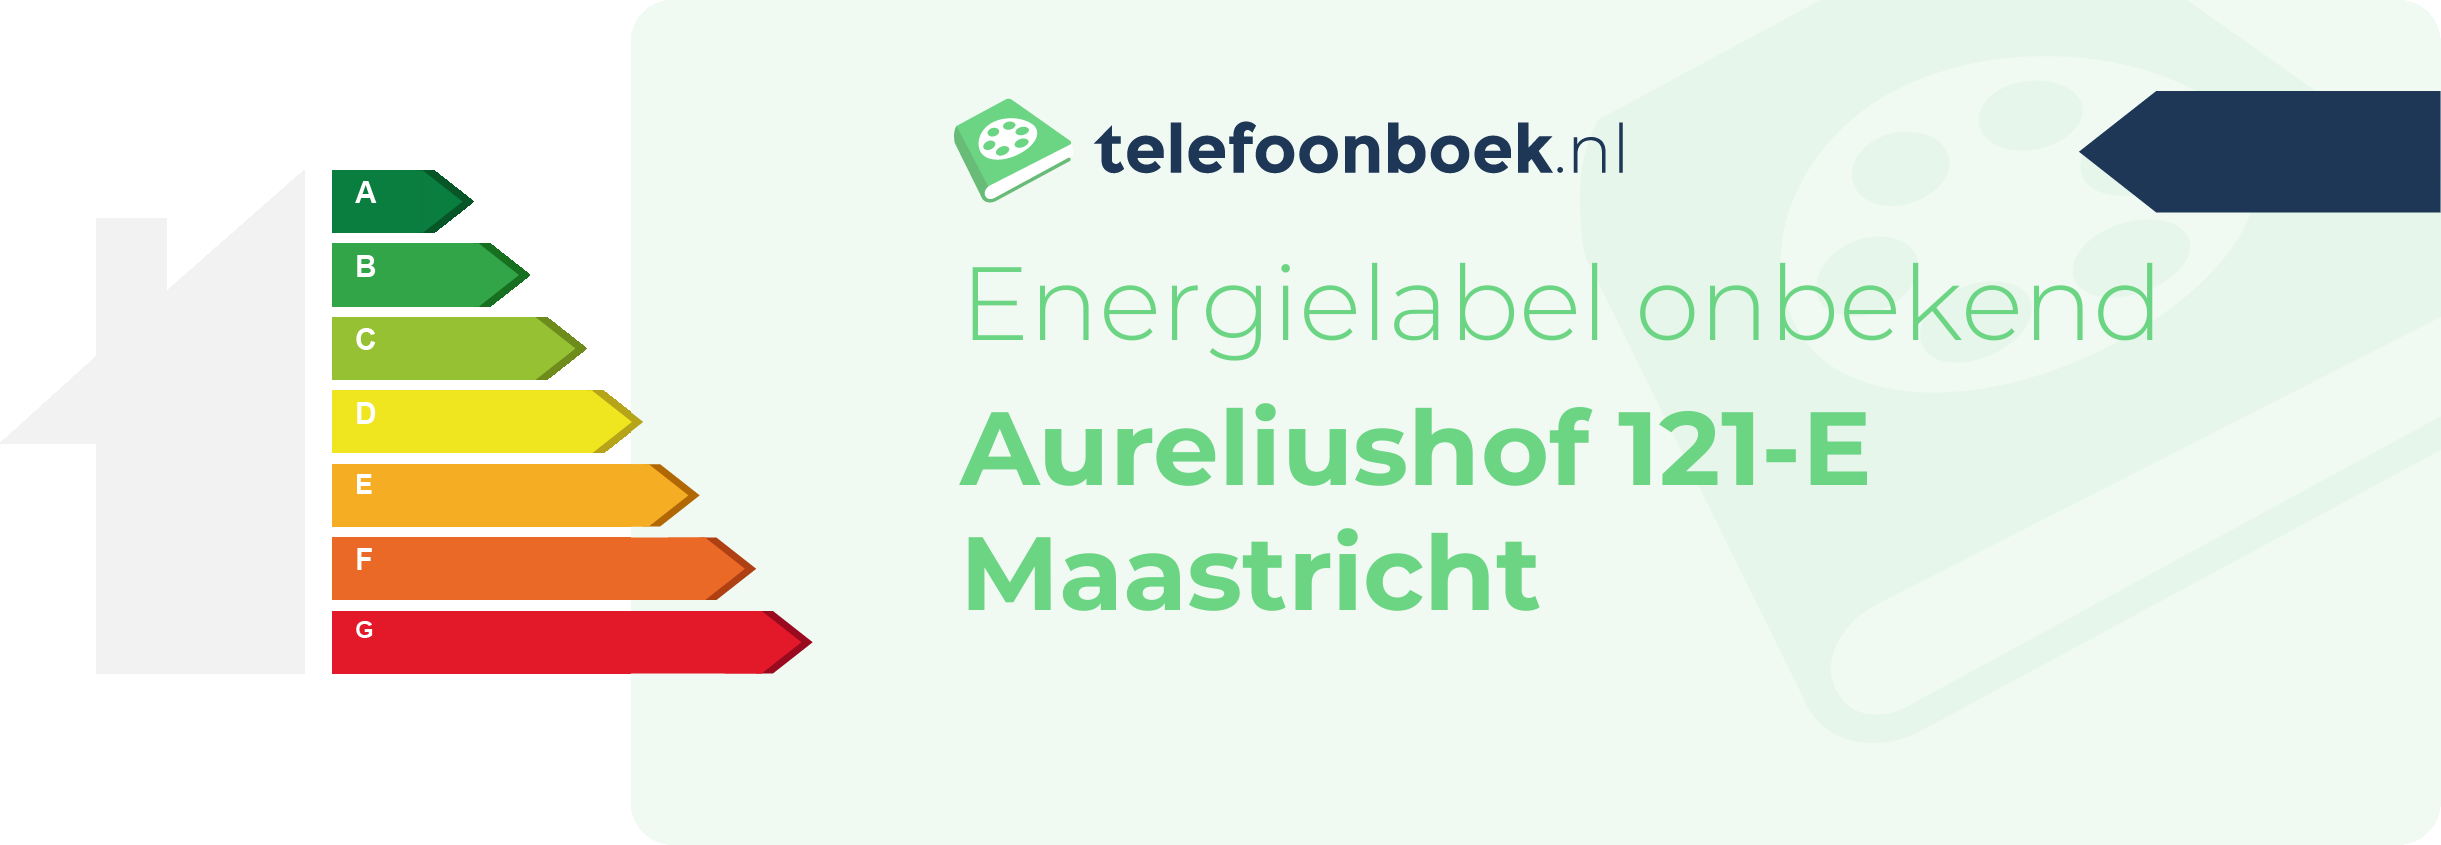 Energielabel Aureliushof 121-E Maastricht